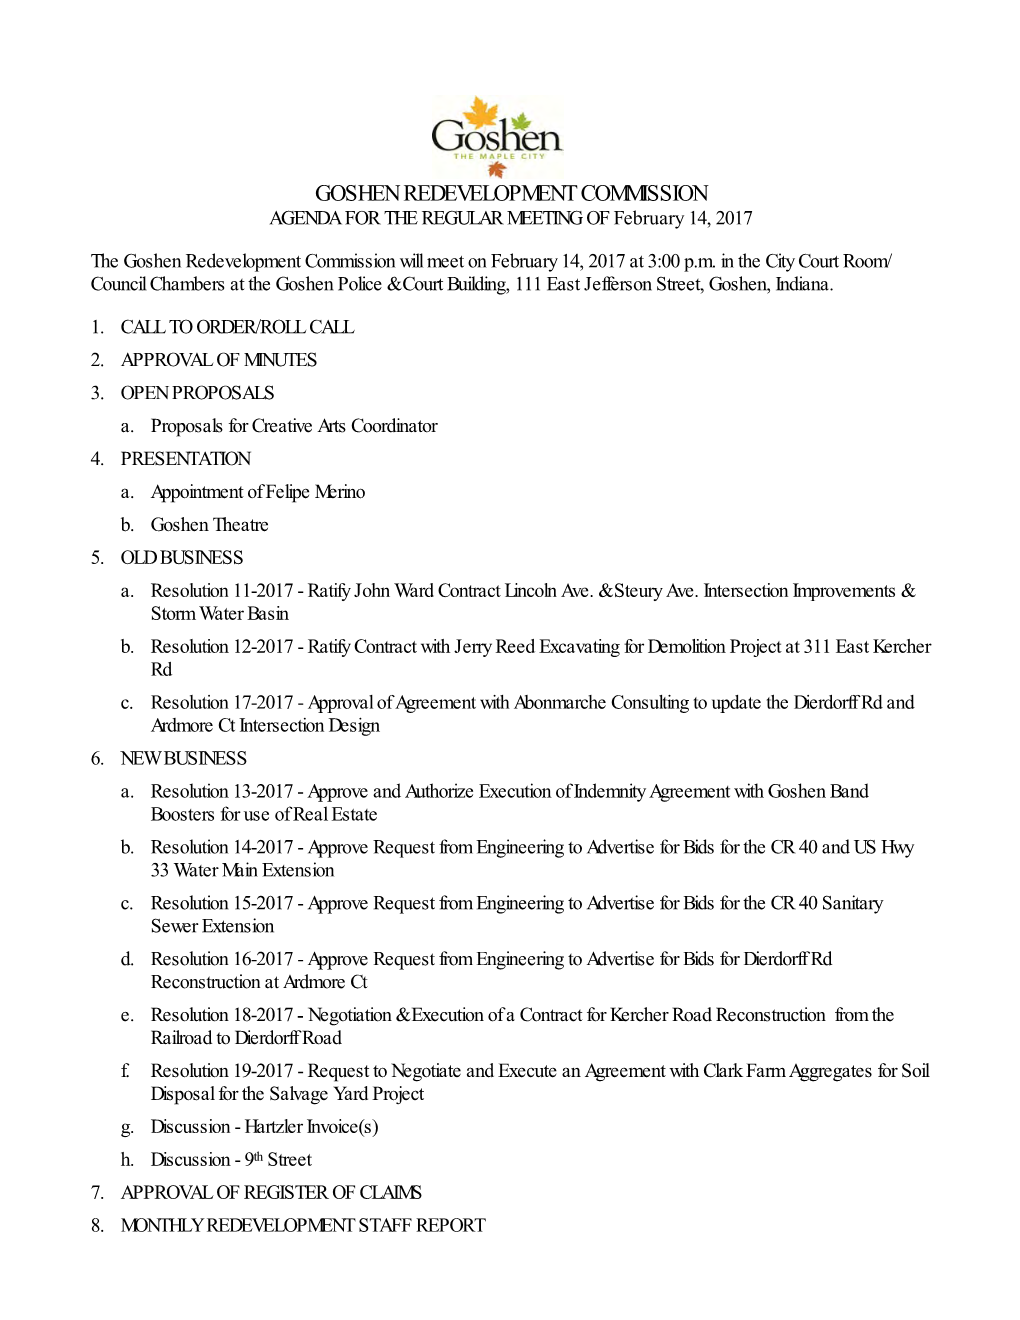 GOSHEN REDEVELOPMENT COMMISSION AGENDA for the REGULAR MEETING of February 14, 2017